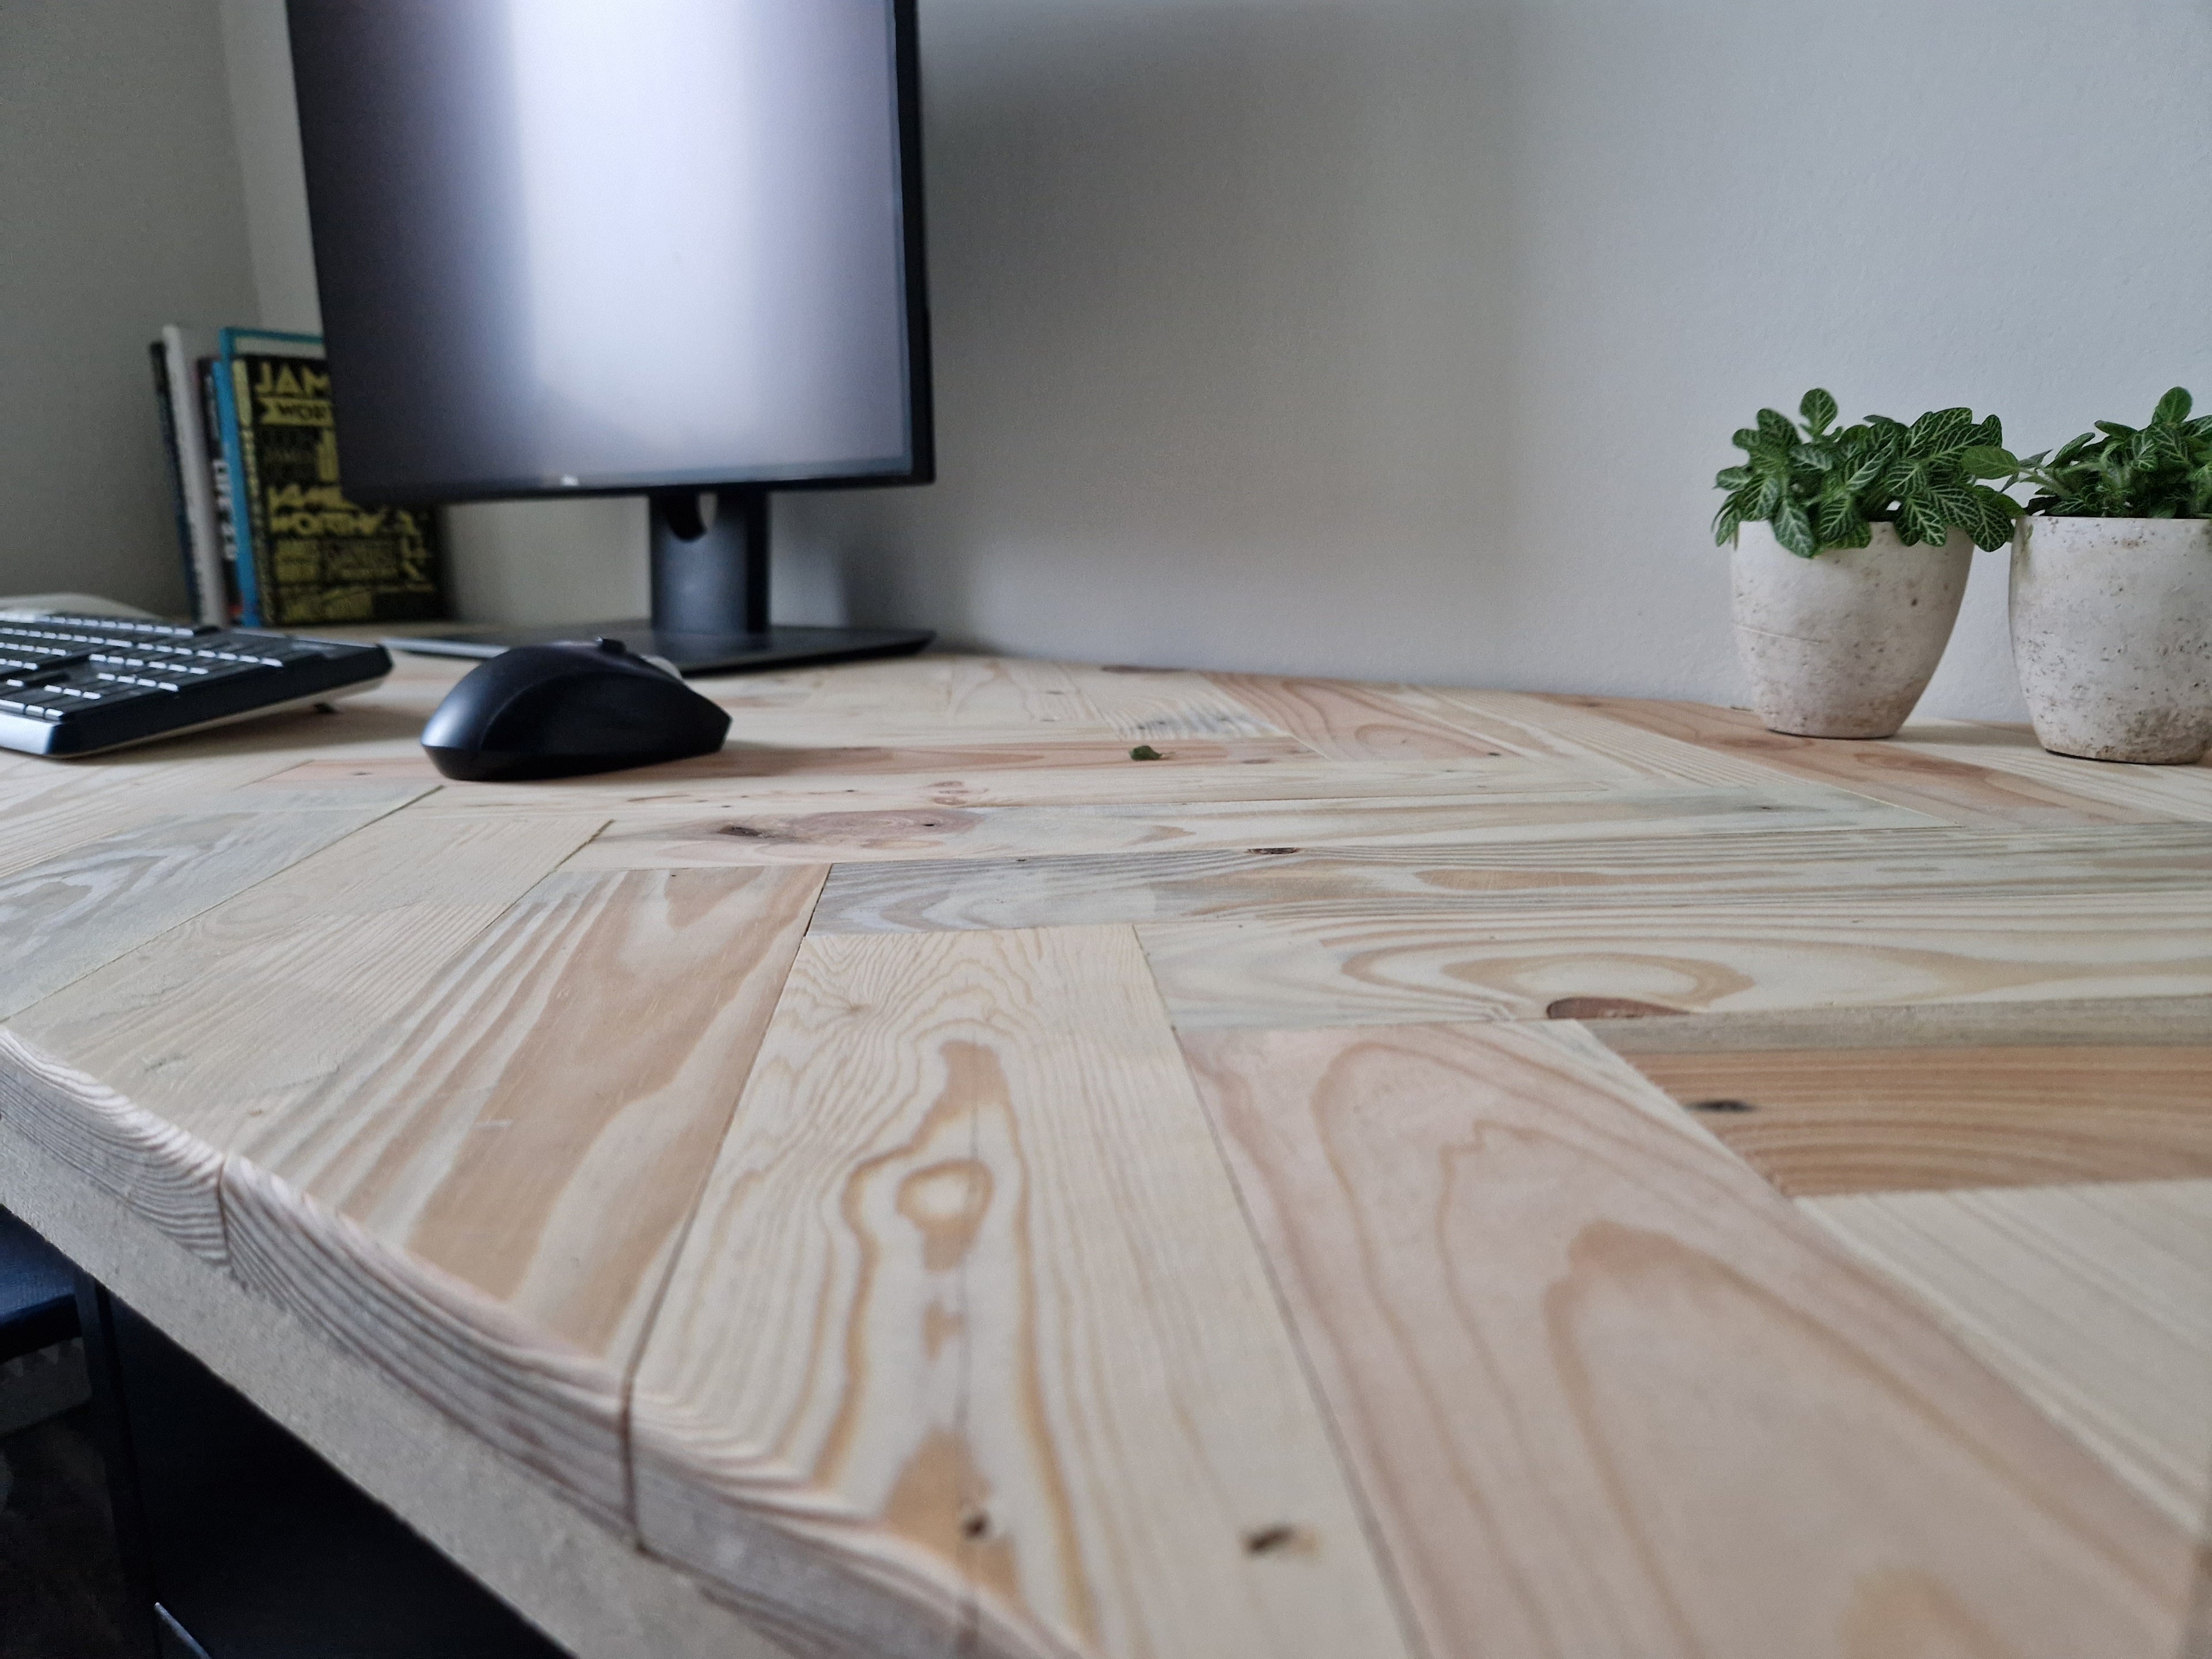 Houten bureaublad met visgraat patroon van recycled hout met een monitor, muis, toetsenbord en planten in pot.